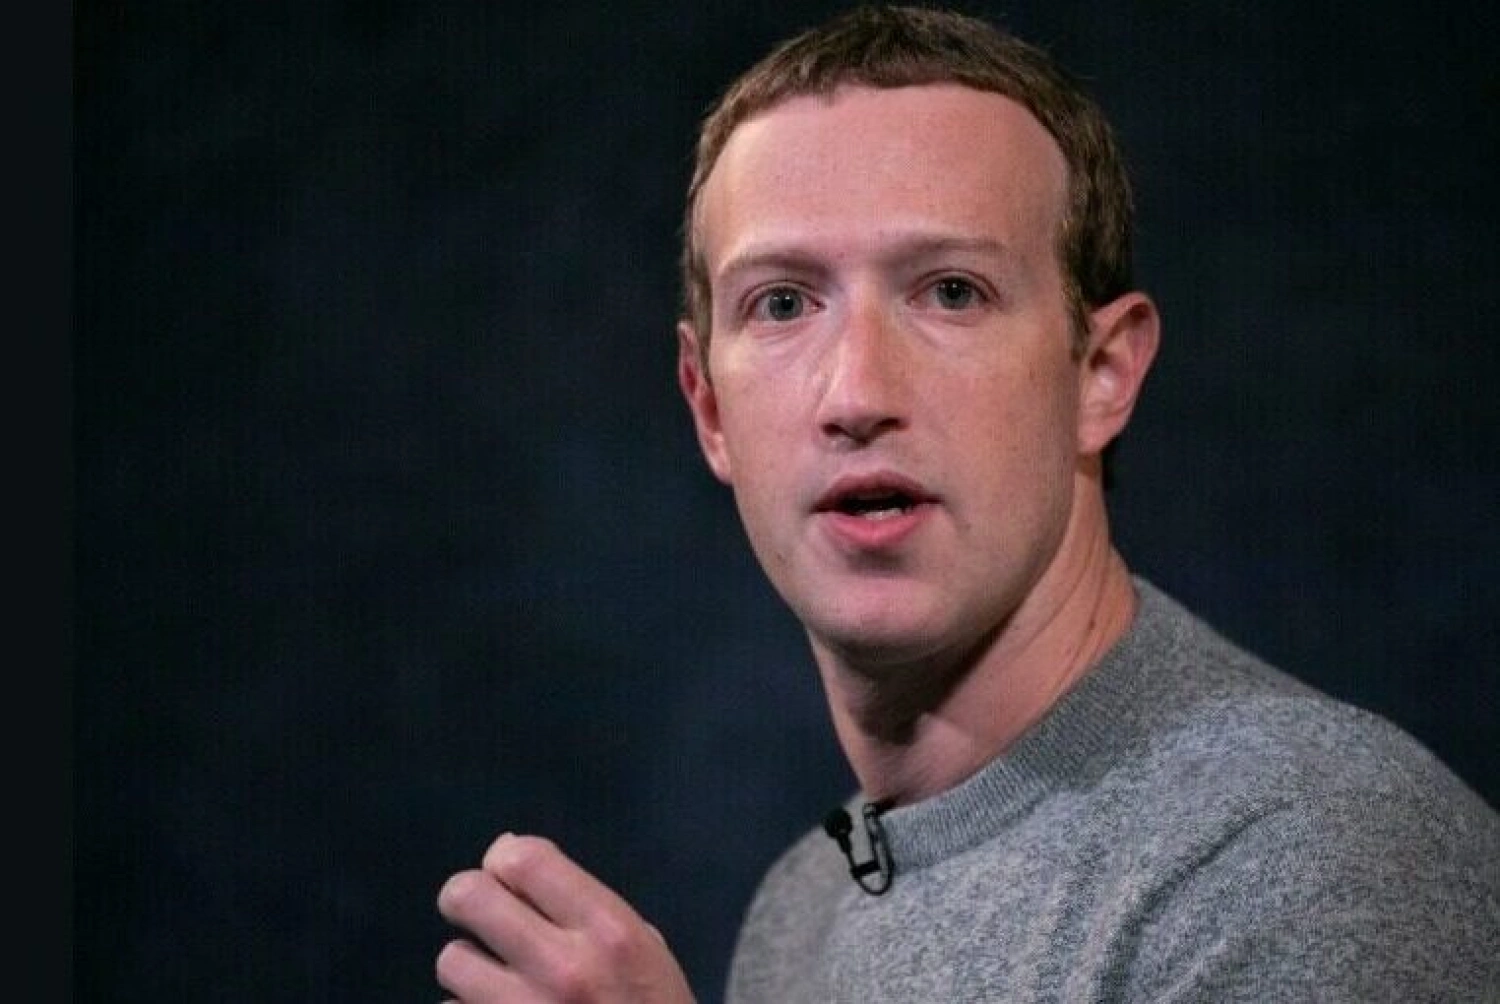 Mladík, ktorý predal súkromie celého sveta. Mark Zuckerberg a jeho miliardy „priateľov“